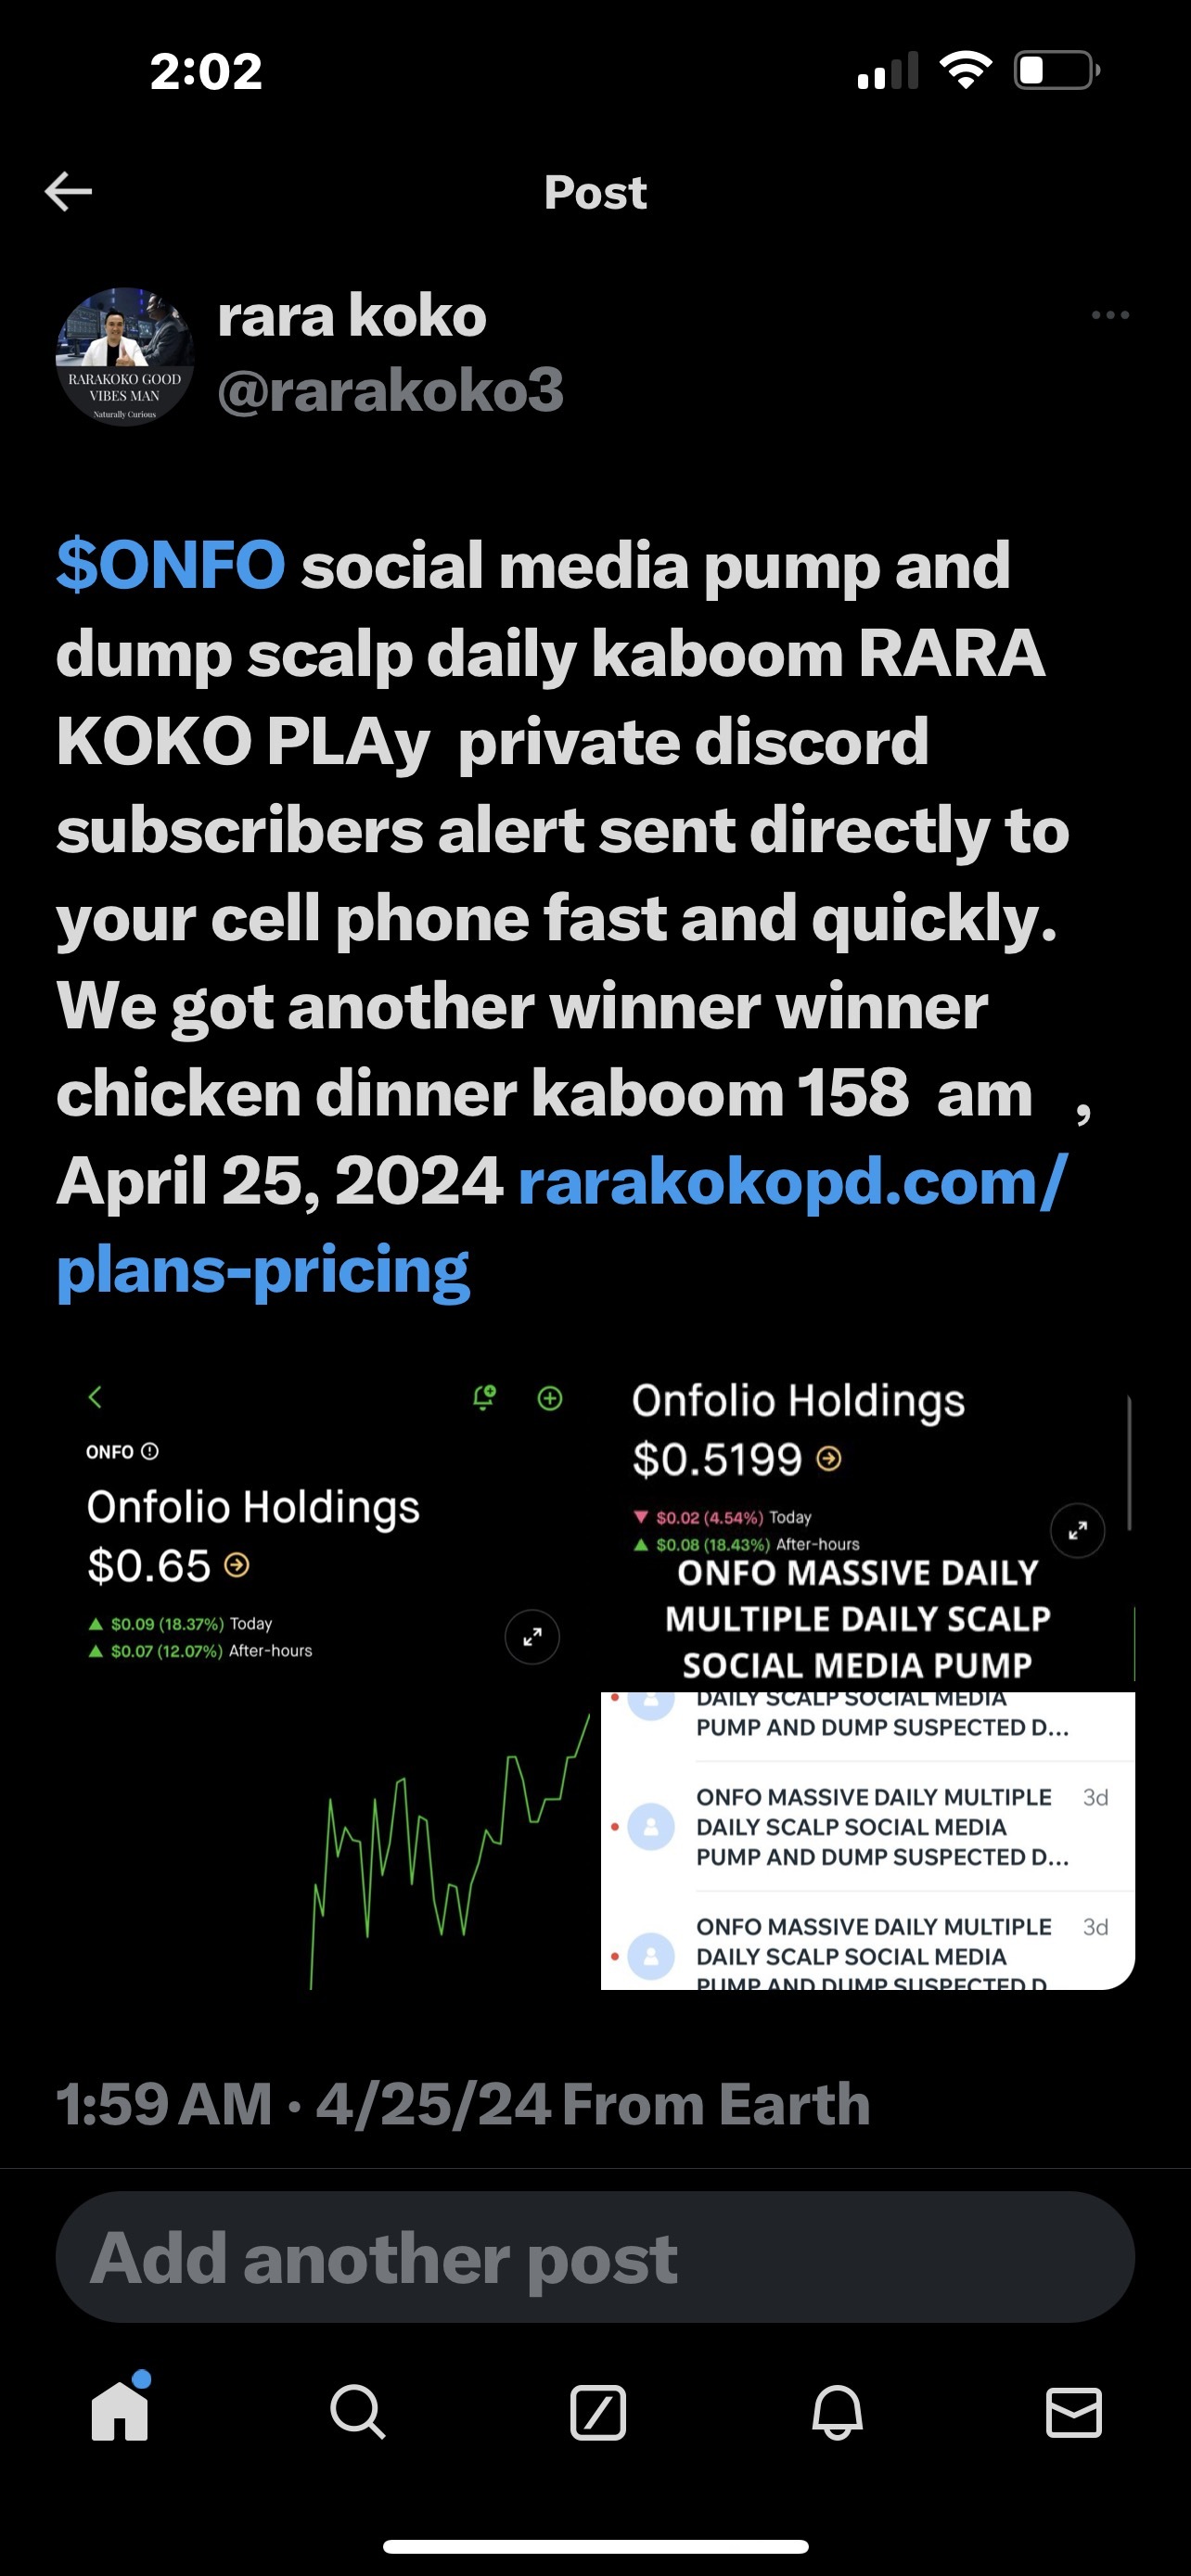 $ONFO 社交媒體每天幫助頭皮幫助 RARA KOKO PLAY 私人異常訂閱者警報直接快速地發送到您的手機。我們還有另一個獲勝者的雞肉晚餐 kab